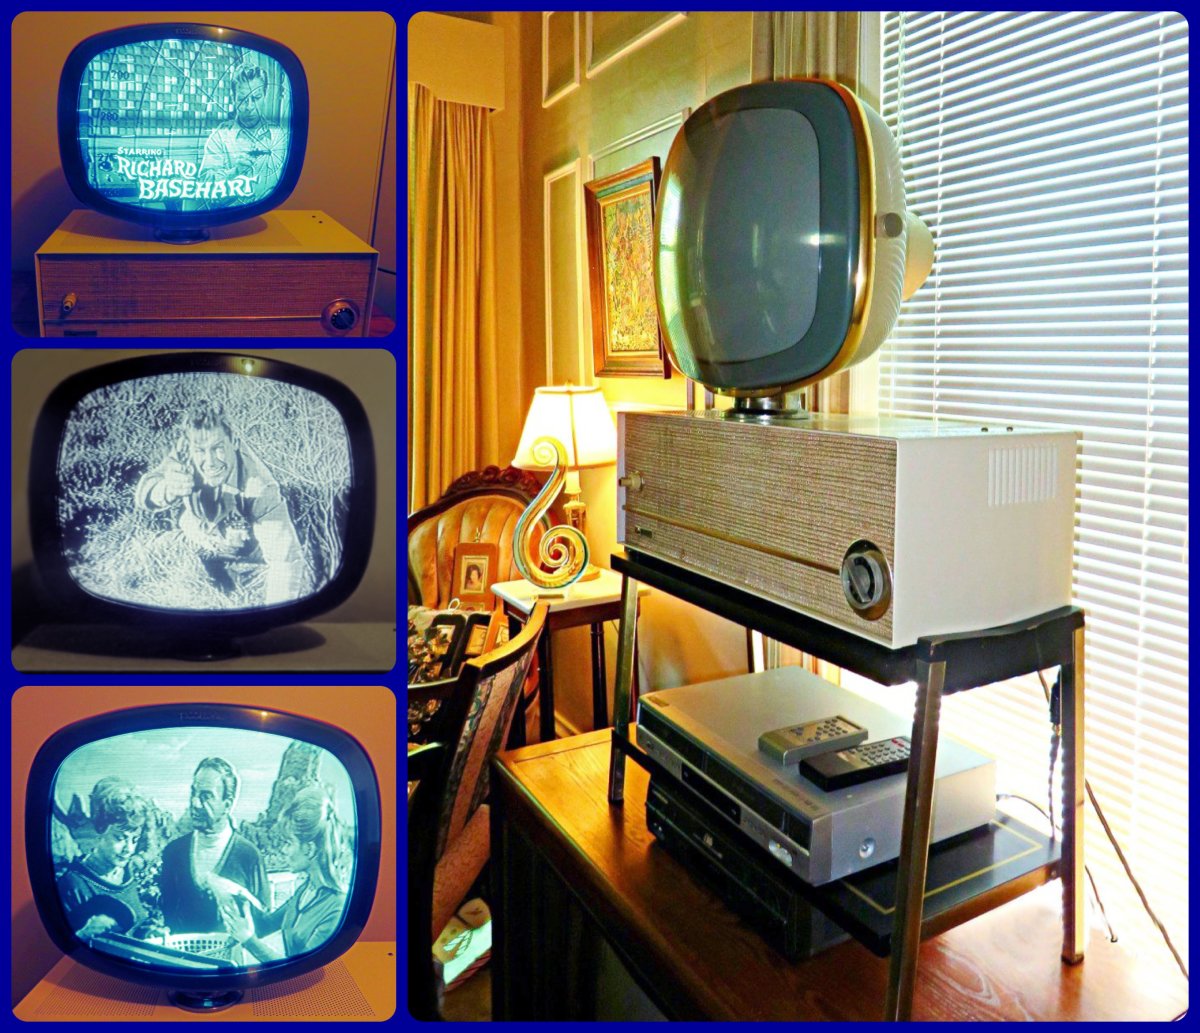 The 1960 Philco Predicta Debutante Television & the Philco Predicta History